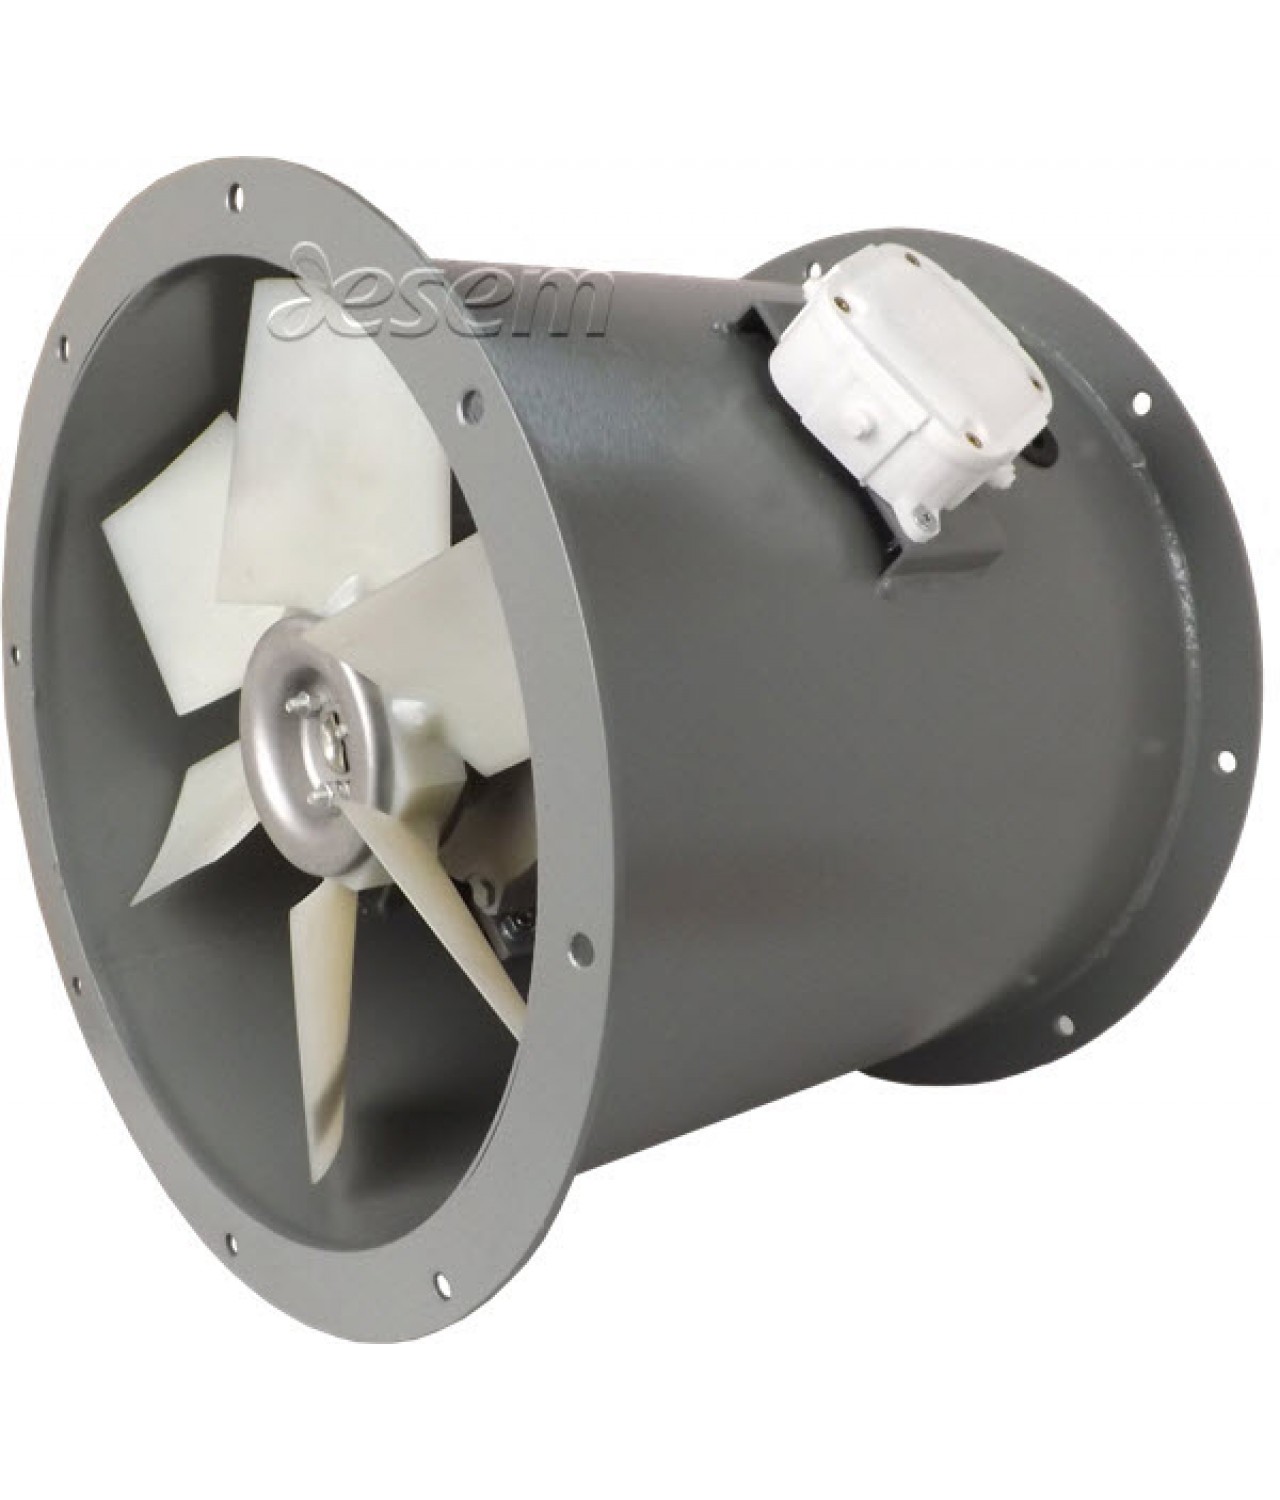 Heavy duty axial duct fans AVOFK ≤27000 m³/h - 1